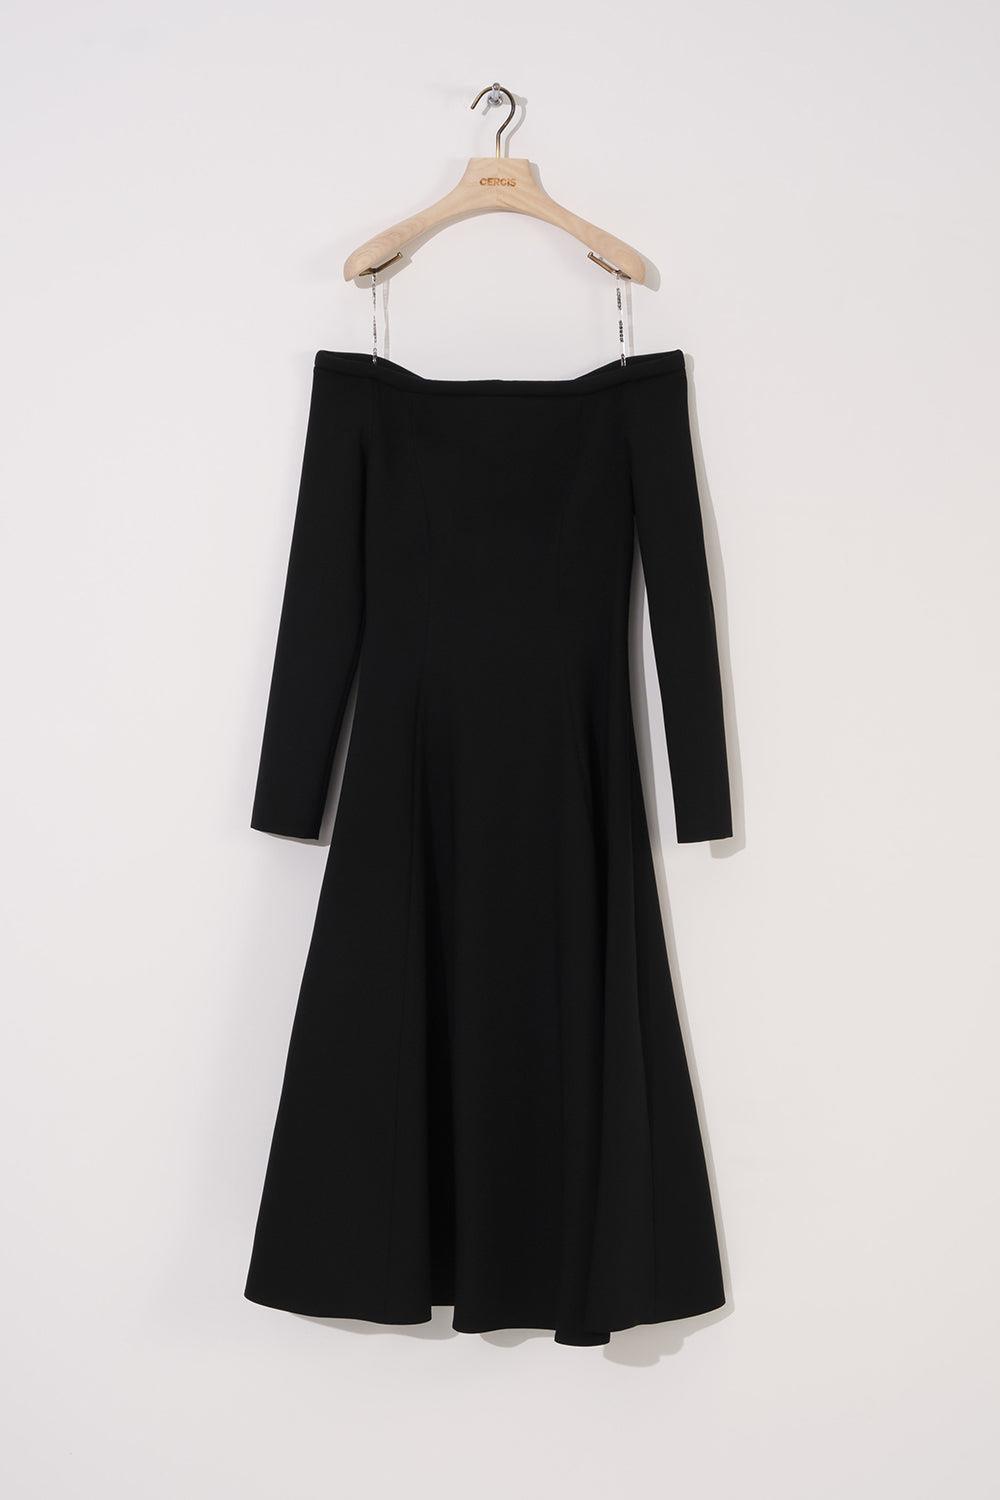 Uzun Kol Straplez Krep Elbise - Eser Giyim